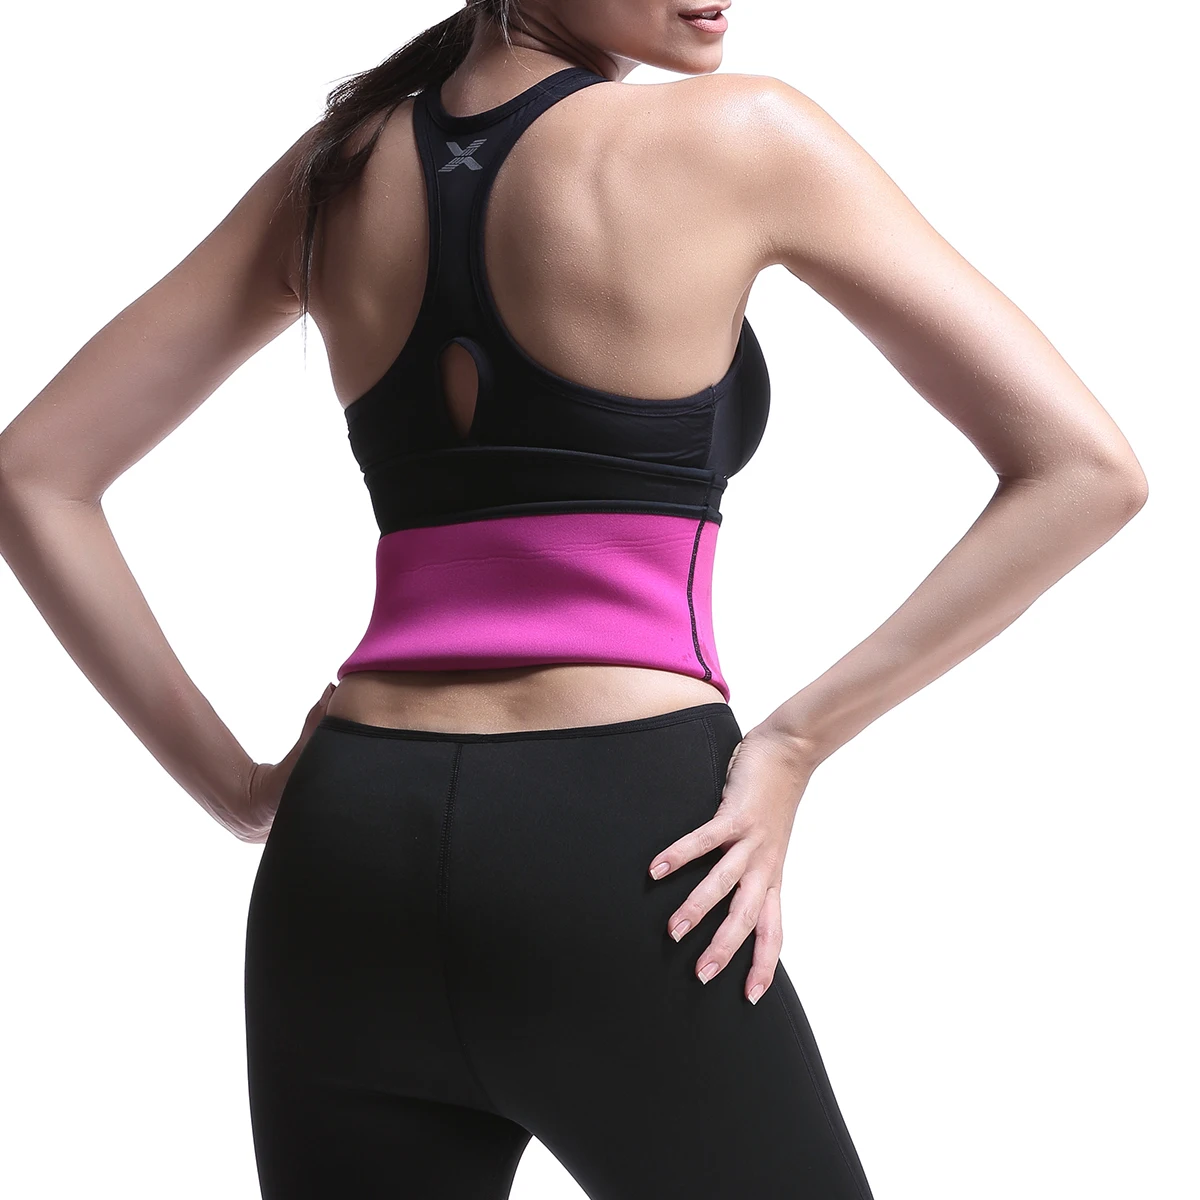 

Women's neoprene fajas body shaper Slimming Waist shapewear Sweat Tummy Belt For Burning Fat, Black+yellow,black+rose red